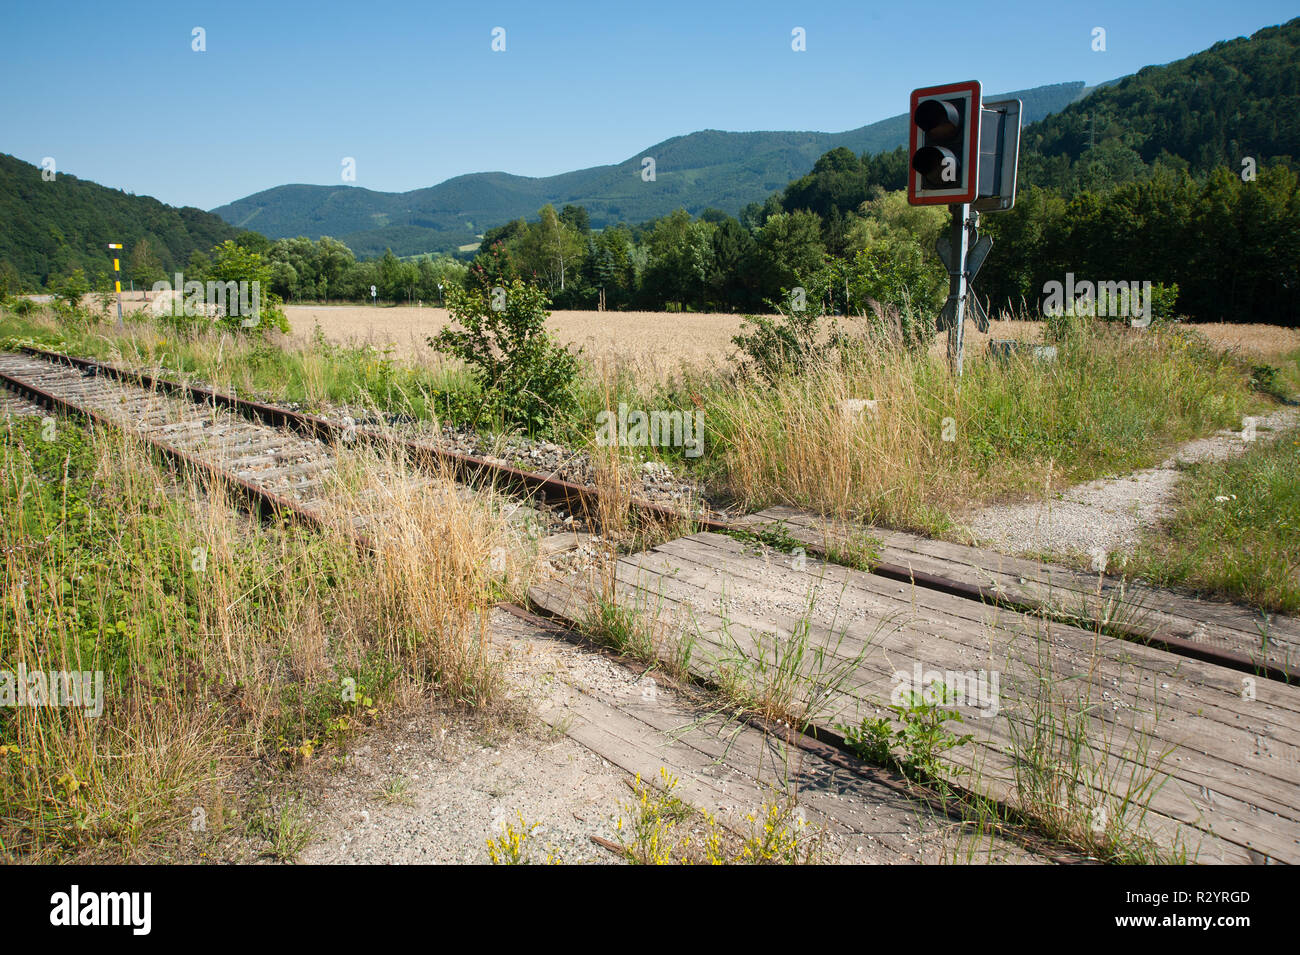 Eingestellte Eisenbahnstrecke am Gerichtsberg Foto Stock